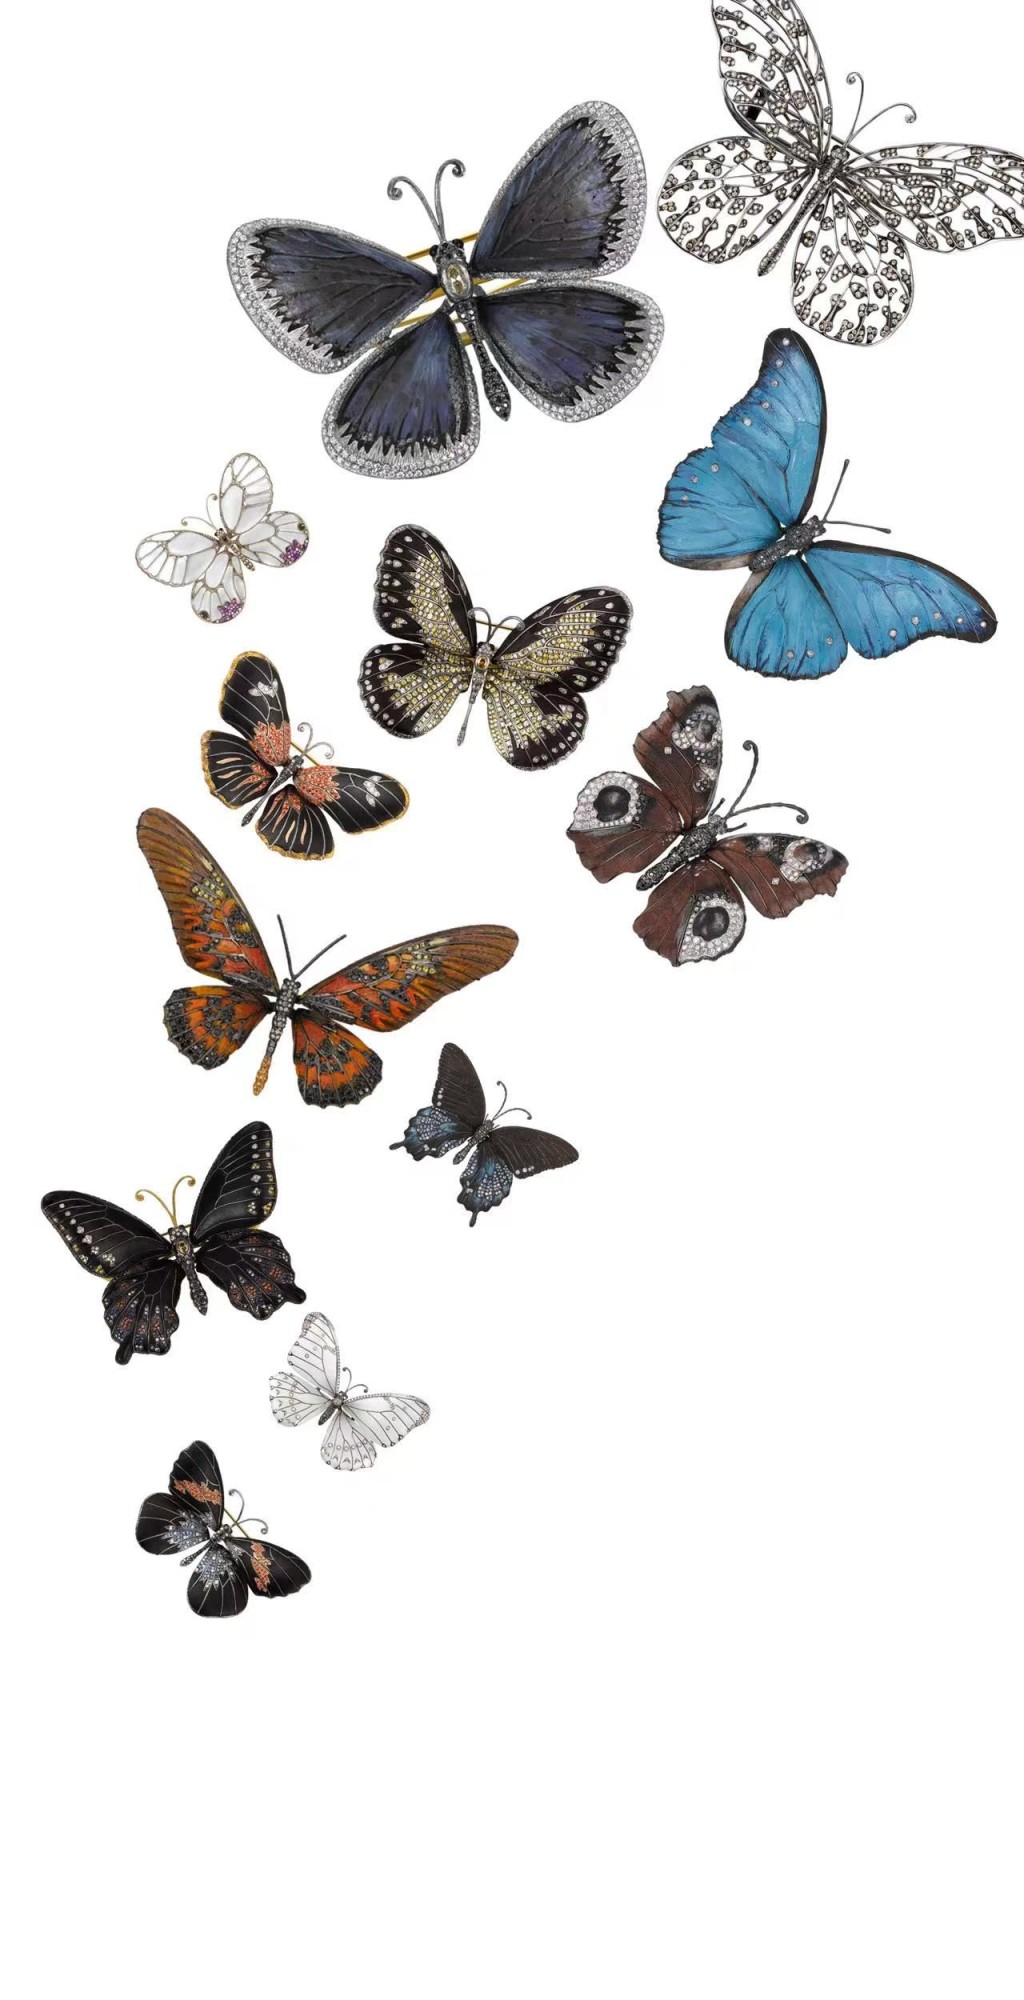 Dickson著名的《庄周梦蝶》系列，选取不同的木素材如巴西孪叶苏木、酸枝木、花梨木、黄檀木等，搭配丰富多姿的宝石，塑造翅膀斑兰的各式蝴蝶。